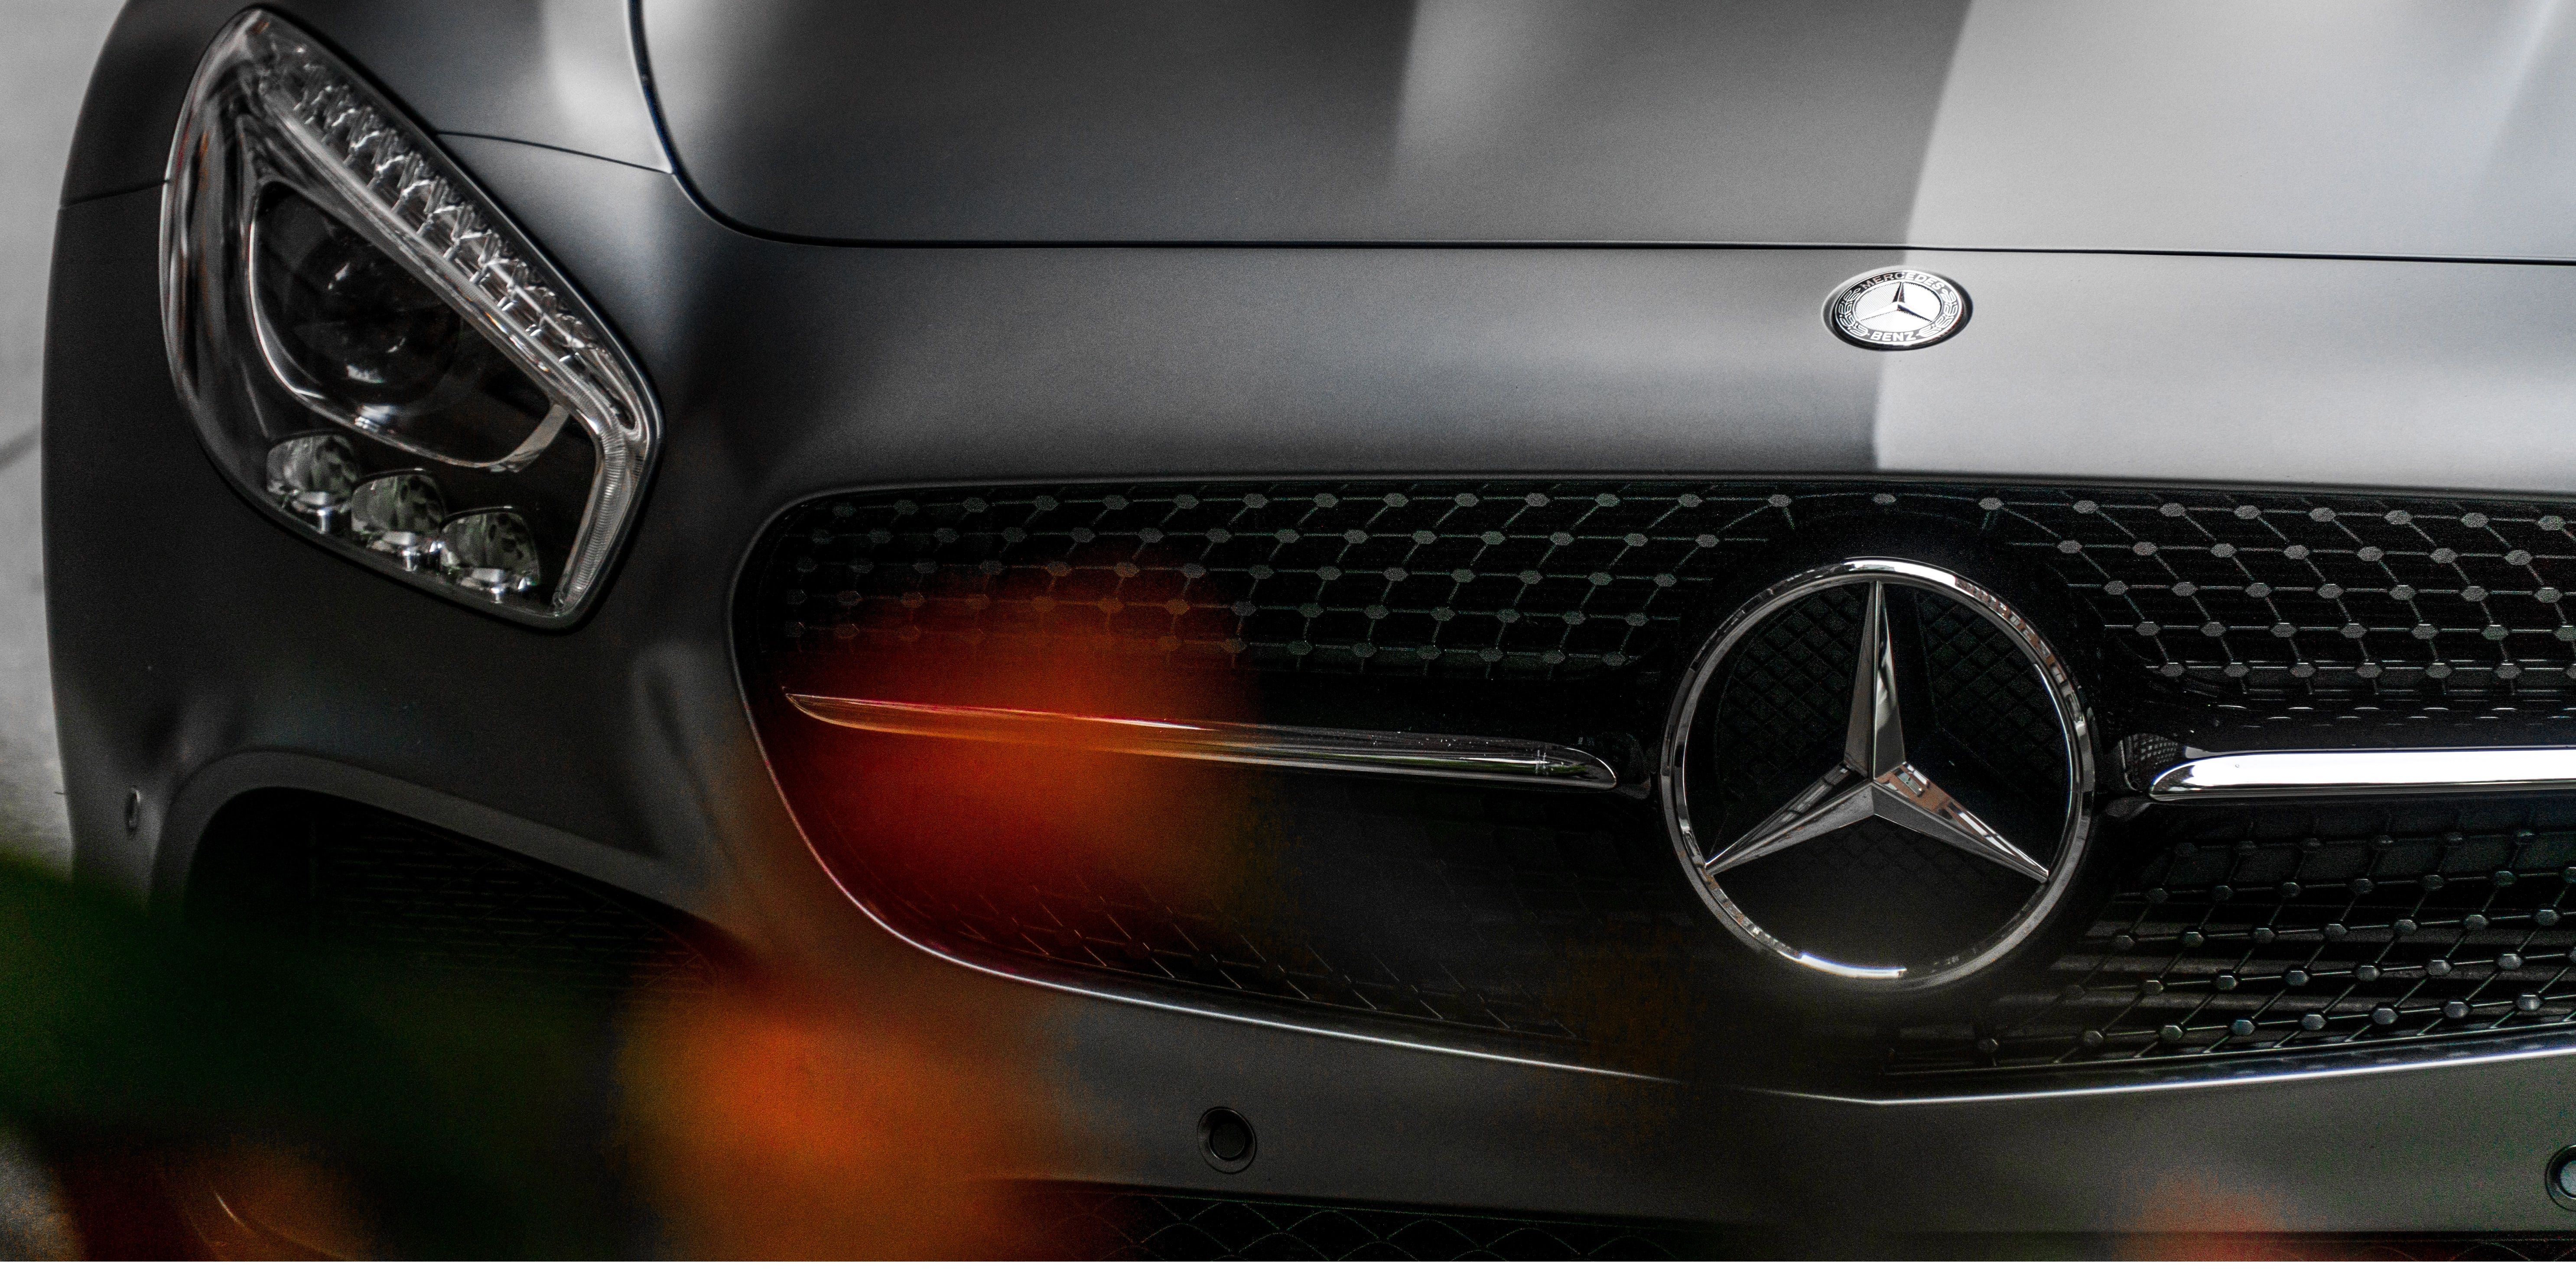 Mercedes ukarany za fałszowanie wyników badań emisji spalin